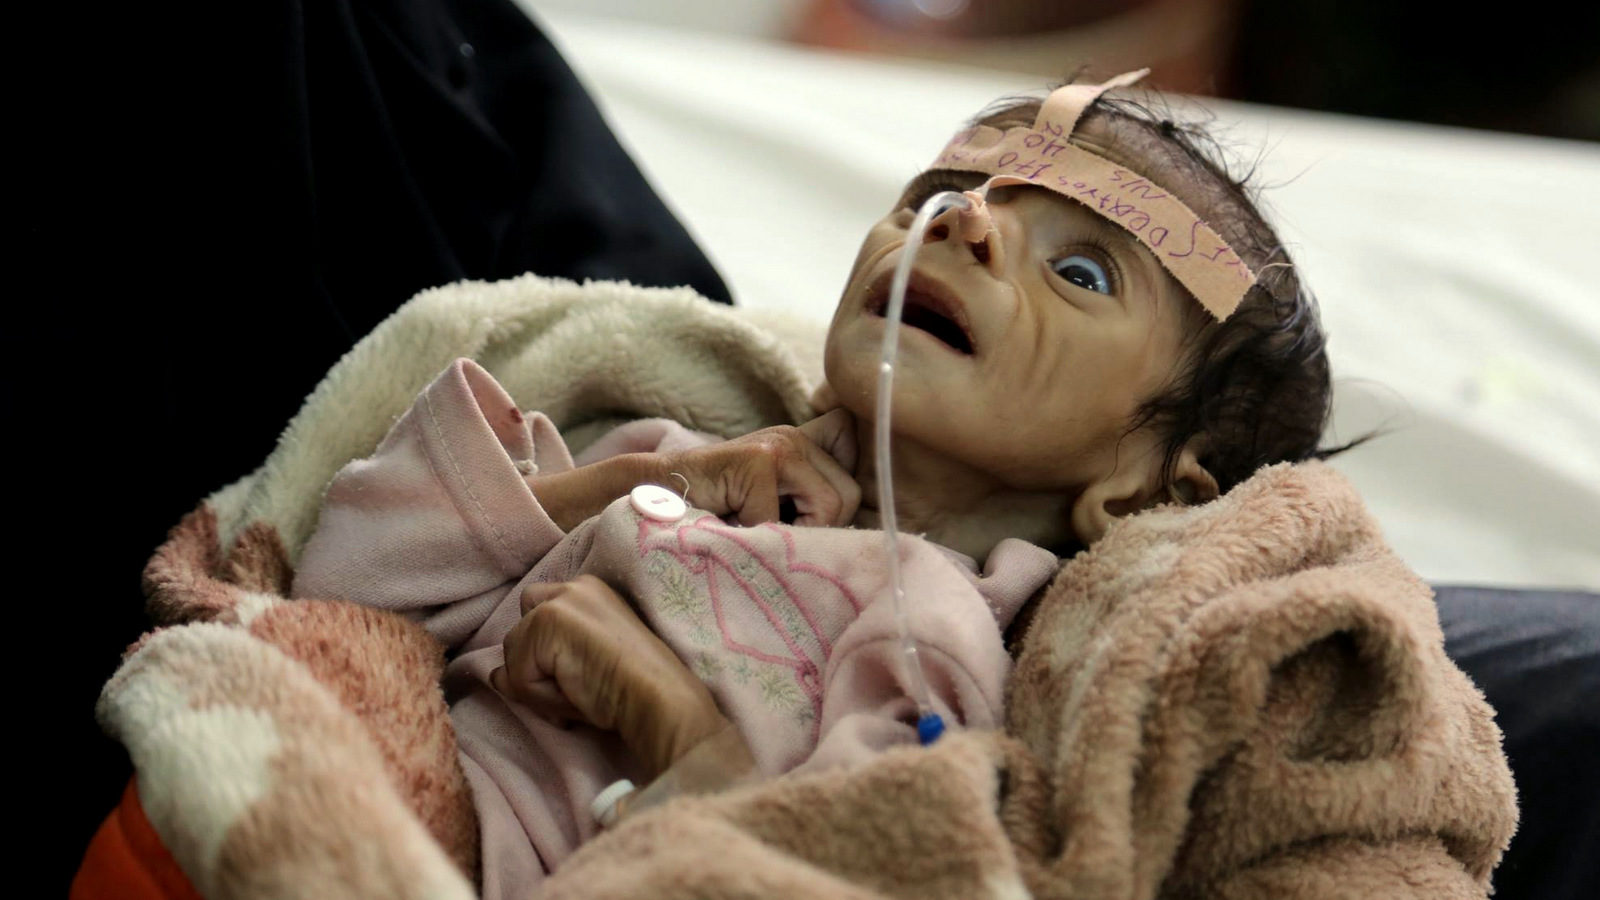 Yemen infant malnutrition starvation